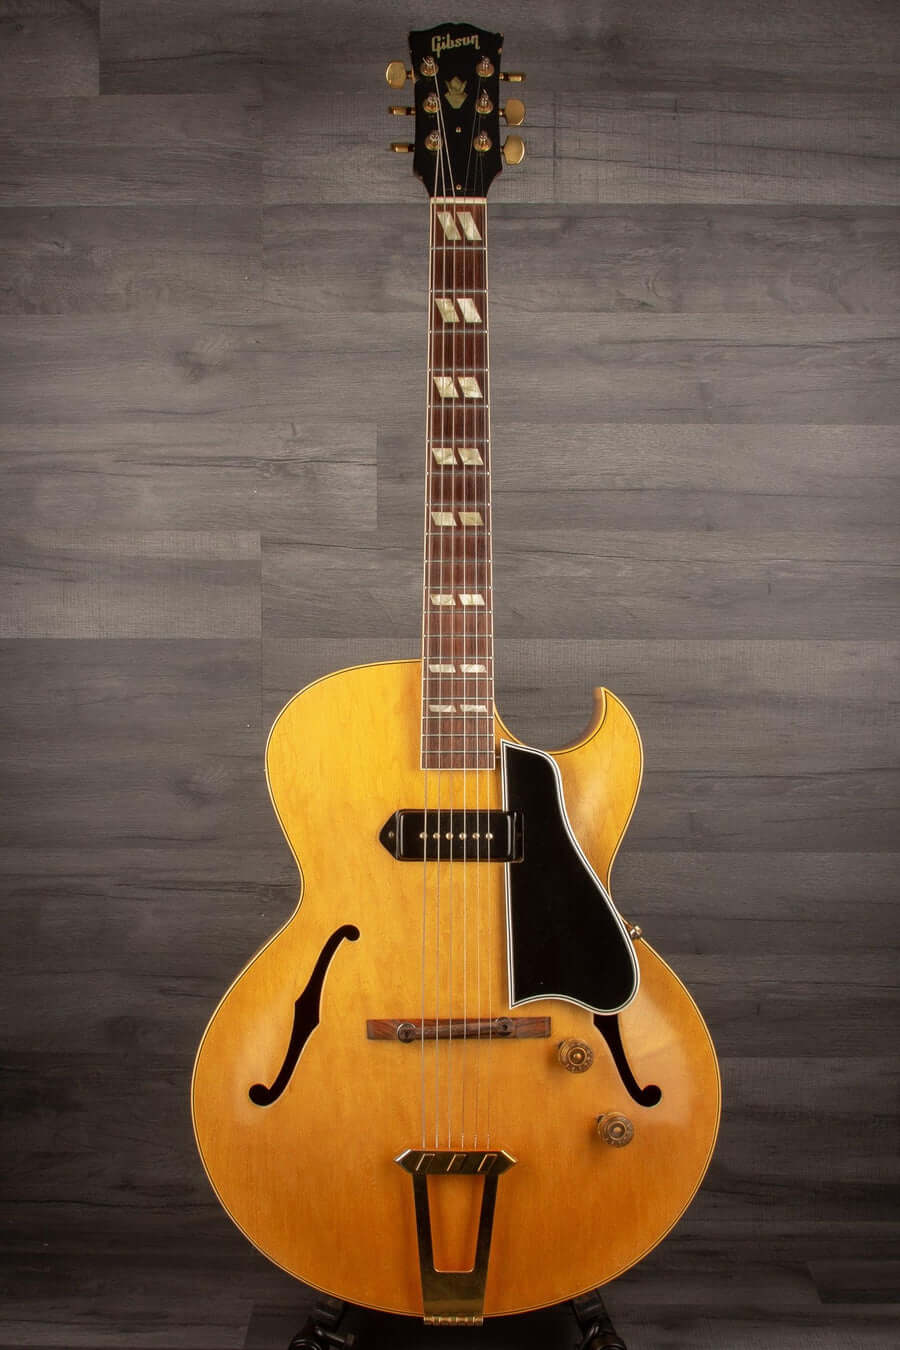 USED - Gibson ES-175 Blonde, 1954